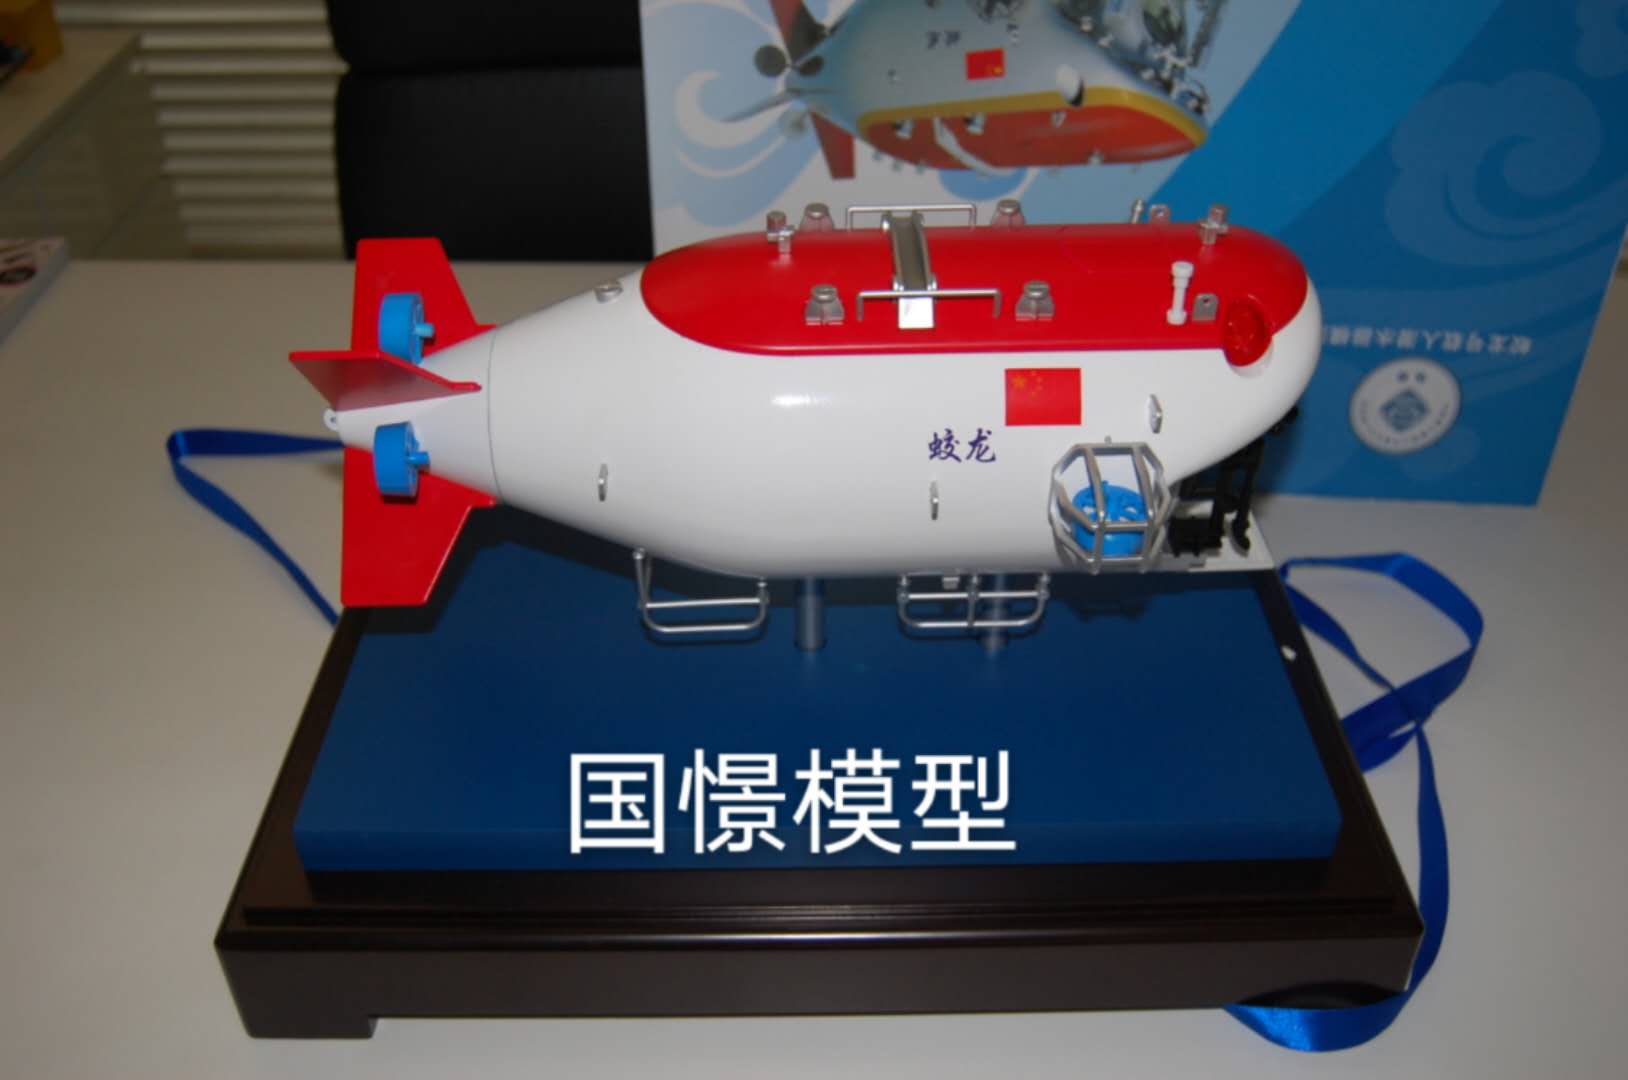 嘉黎县船舶模型